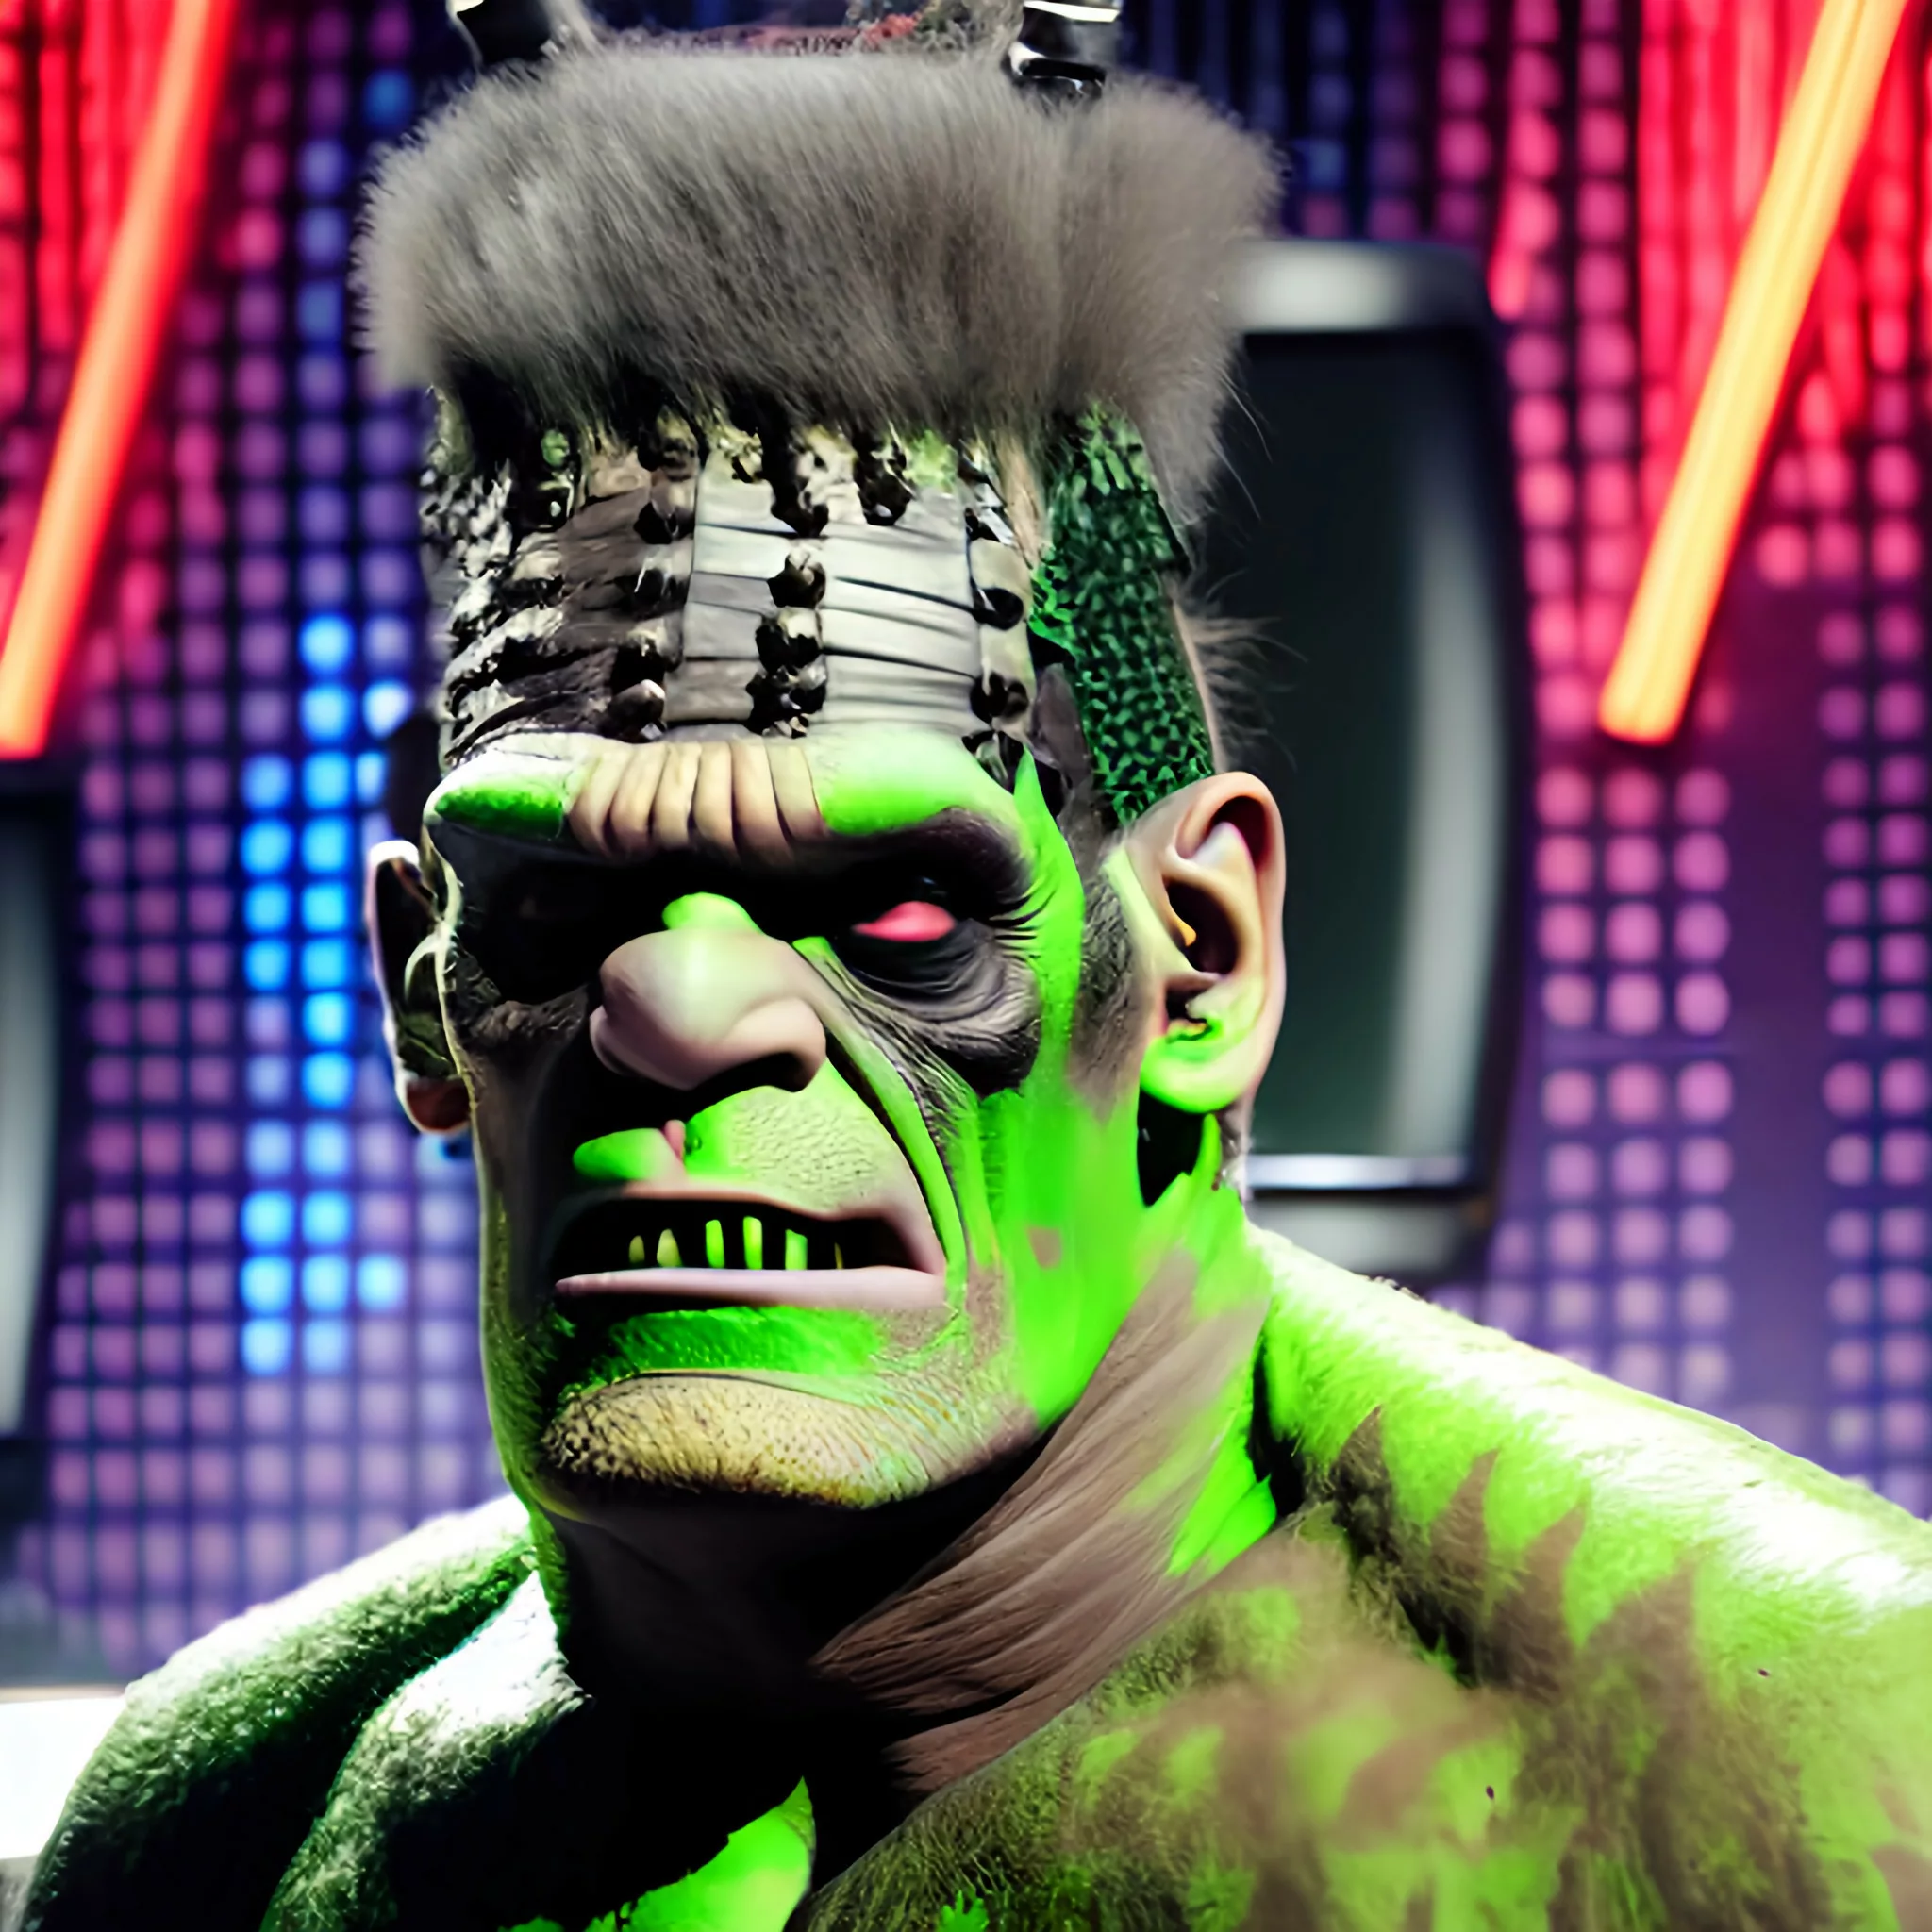 Frankenstein the monster on TV